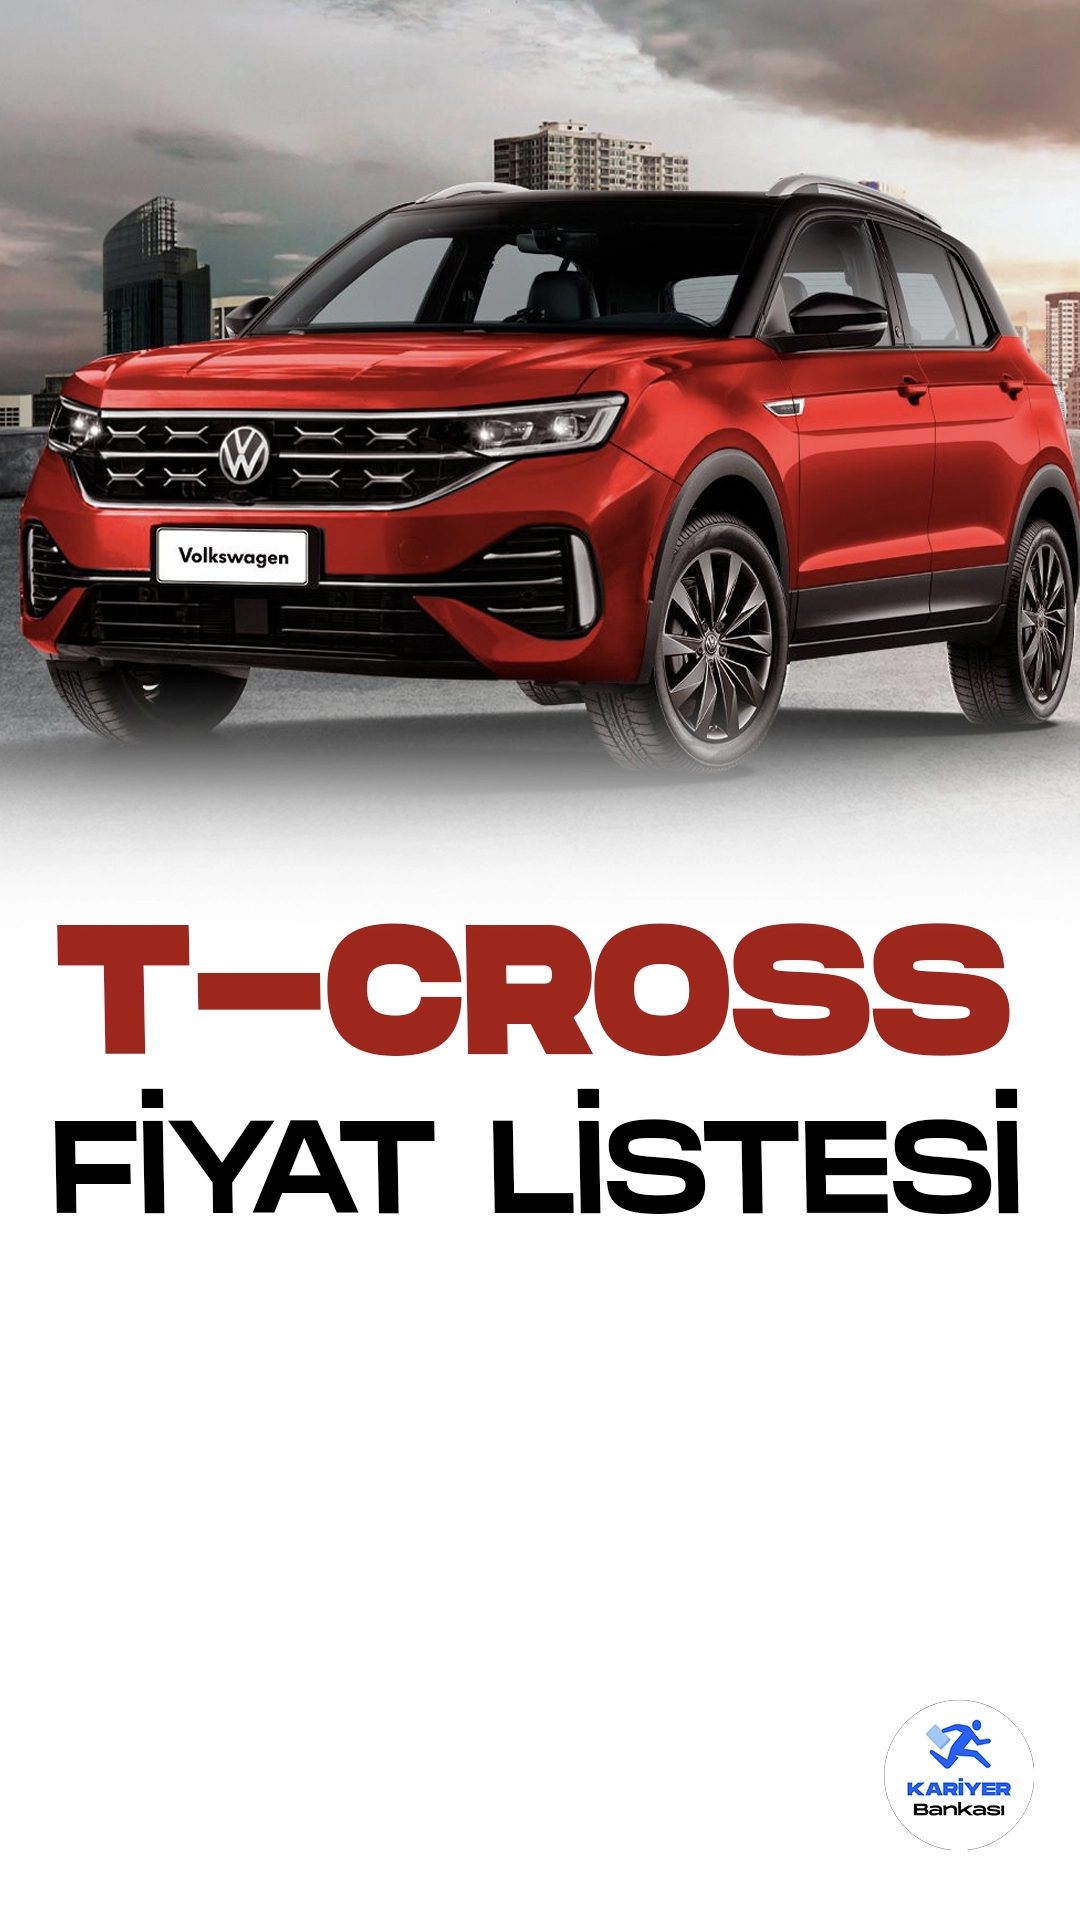 Volkswagen T-Cross Kasım 2023 Fiyat Listesi Yayımlandı.Volkswagen, kompakt SUV segmentinde iddialı bir oyuncu olarak öne çıkan T-Cross modeli ile otomobil tutkunlarını etkilemeye devam ediyor. Şehir içi kullanıma uygun tasarımı ve geniş iç mekanıyla dikkat çeken T-Cross, kullanıcılarına konforlu bir sürüş deneyimi sunuyor. Şık detayları ve güçlü motor seçenekleri ile öne çıkan araç, sürücü dostu teknolojik özellikleriyle de öne çıkıyor.